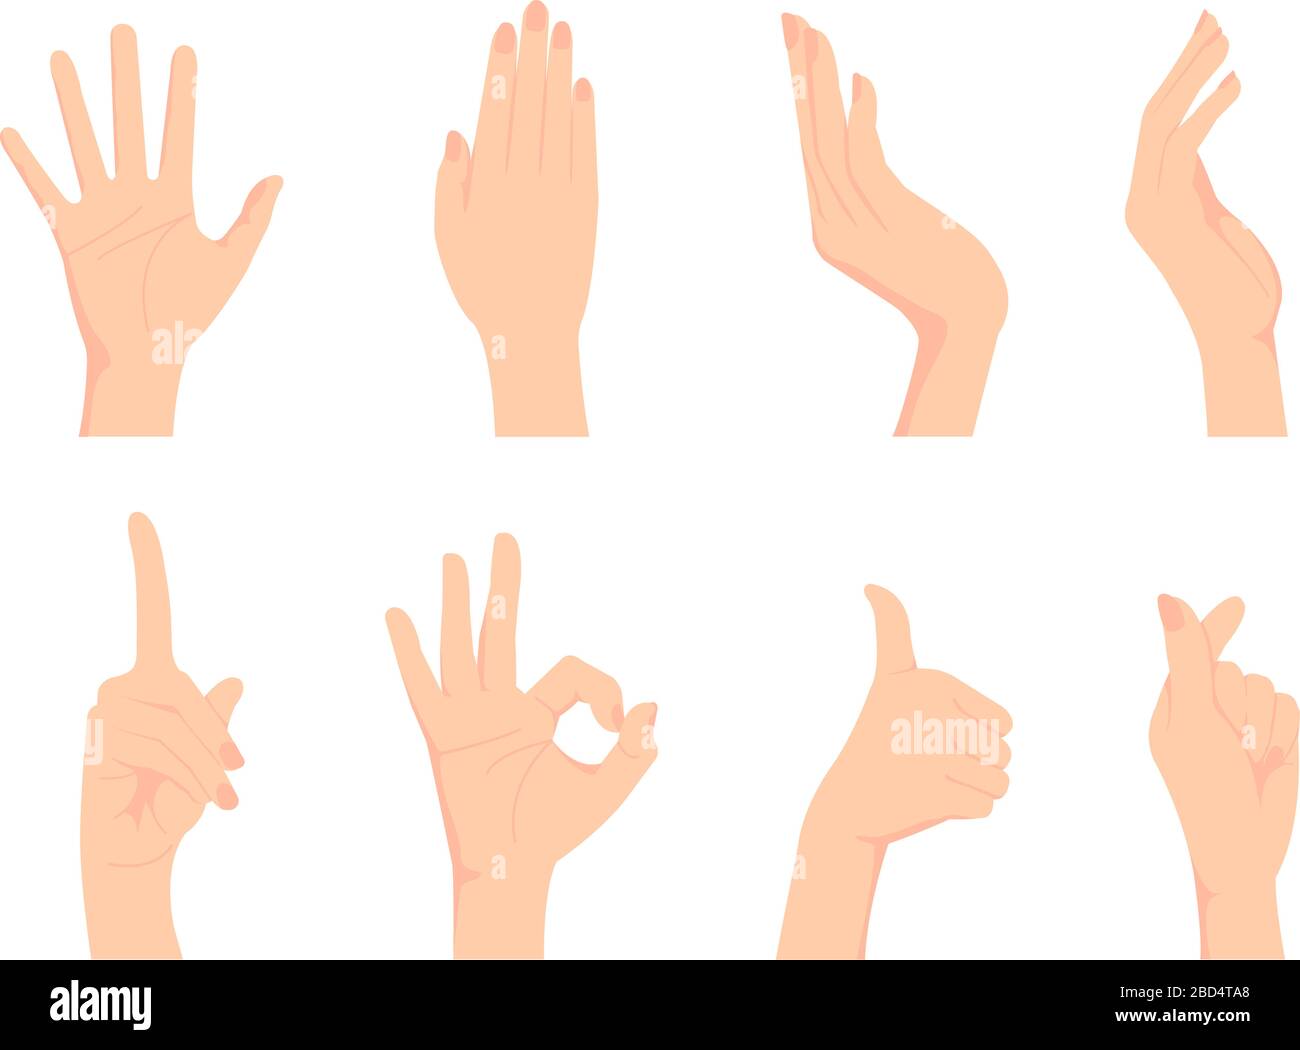 Weibliche Handgeste (Handzeichen) Vektor-Illustration Set / OK-Zeichen, Daumen hoch, Fingerherz etc Stock Vektor